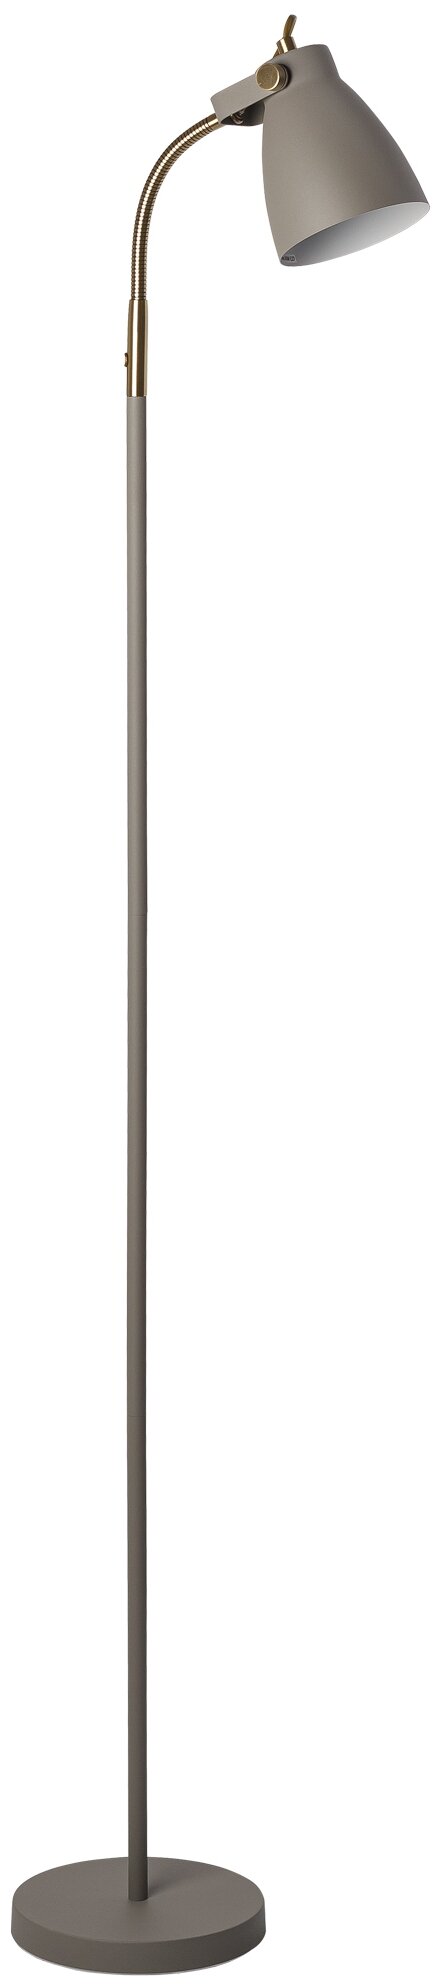 Светильник напольный HT-733GY, ARTSTYLE, серый/ латунь, металлический, E27